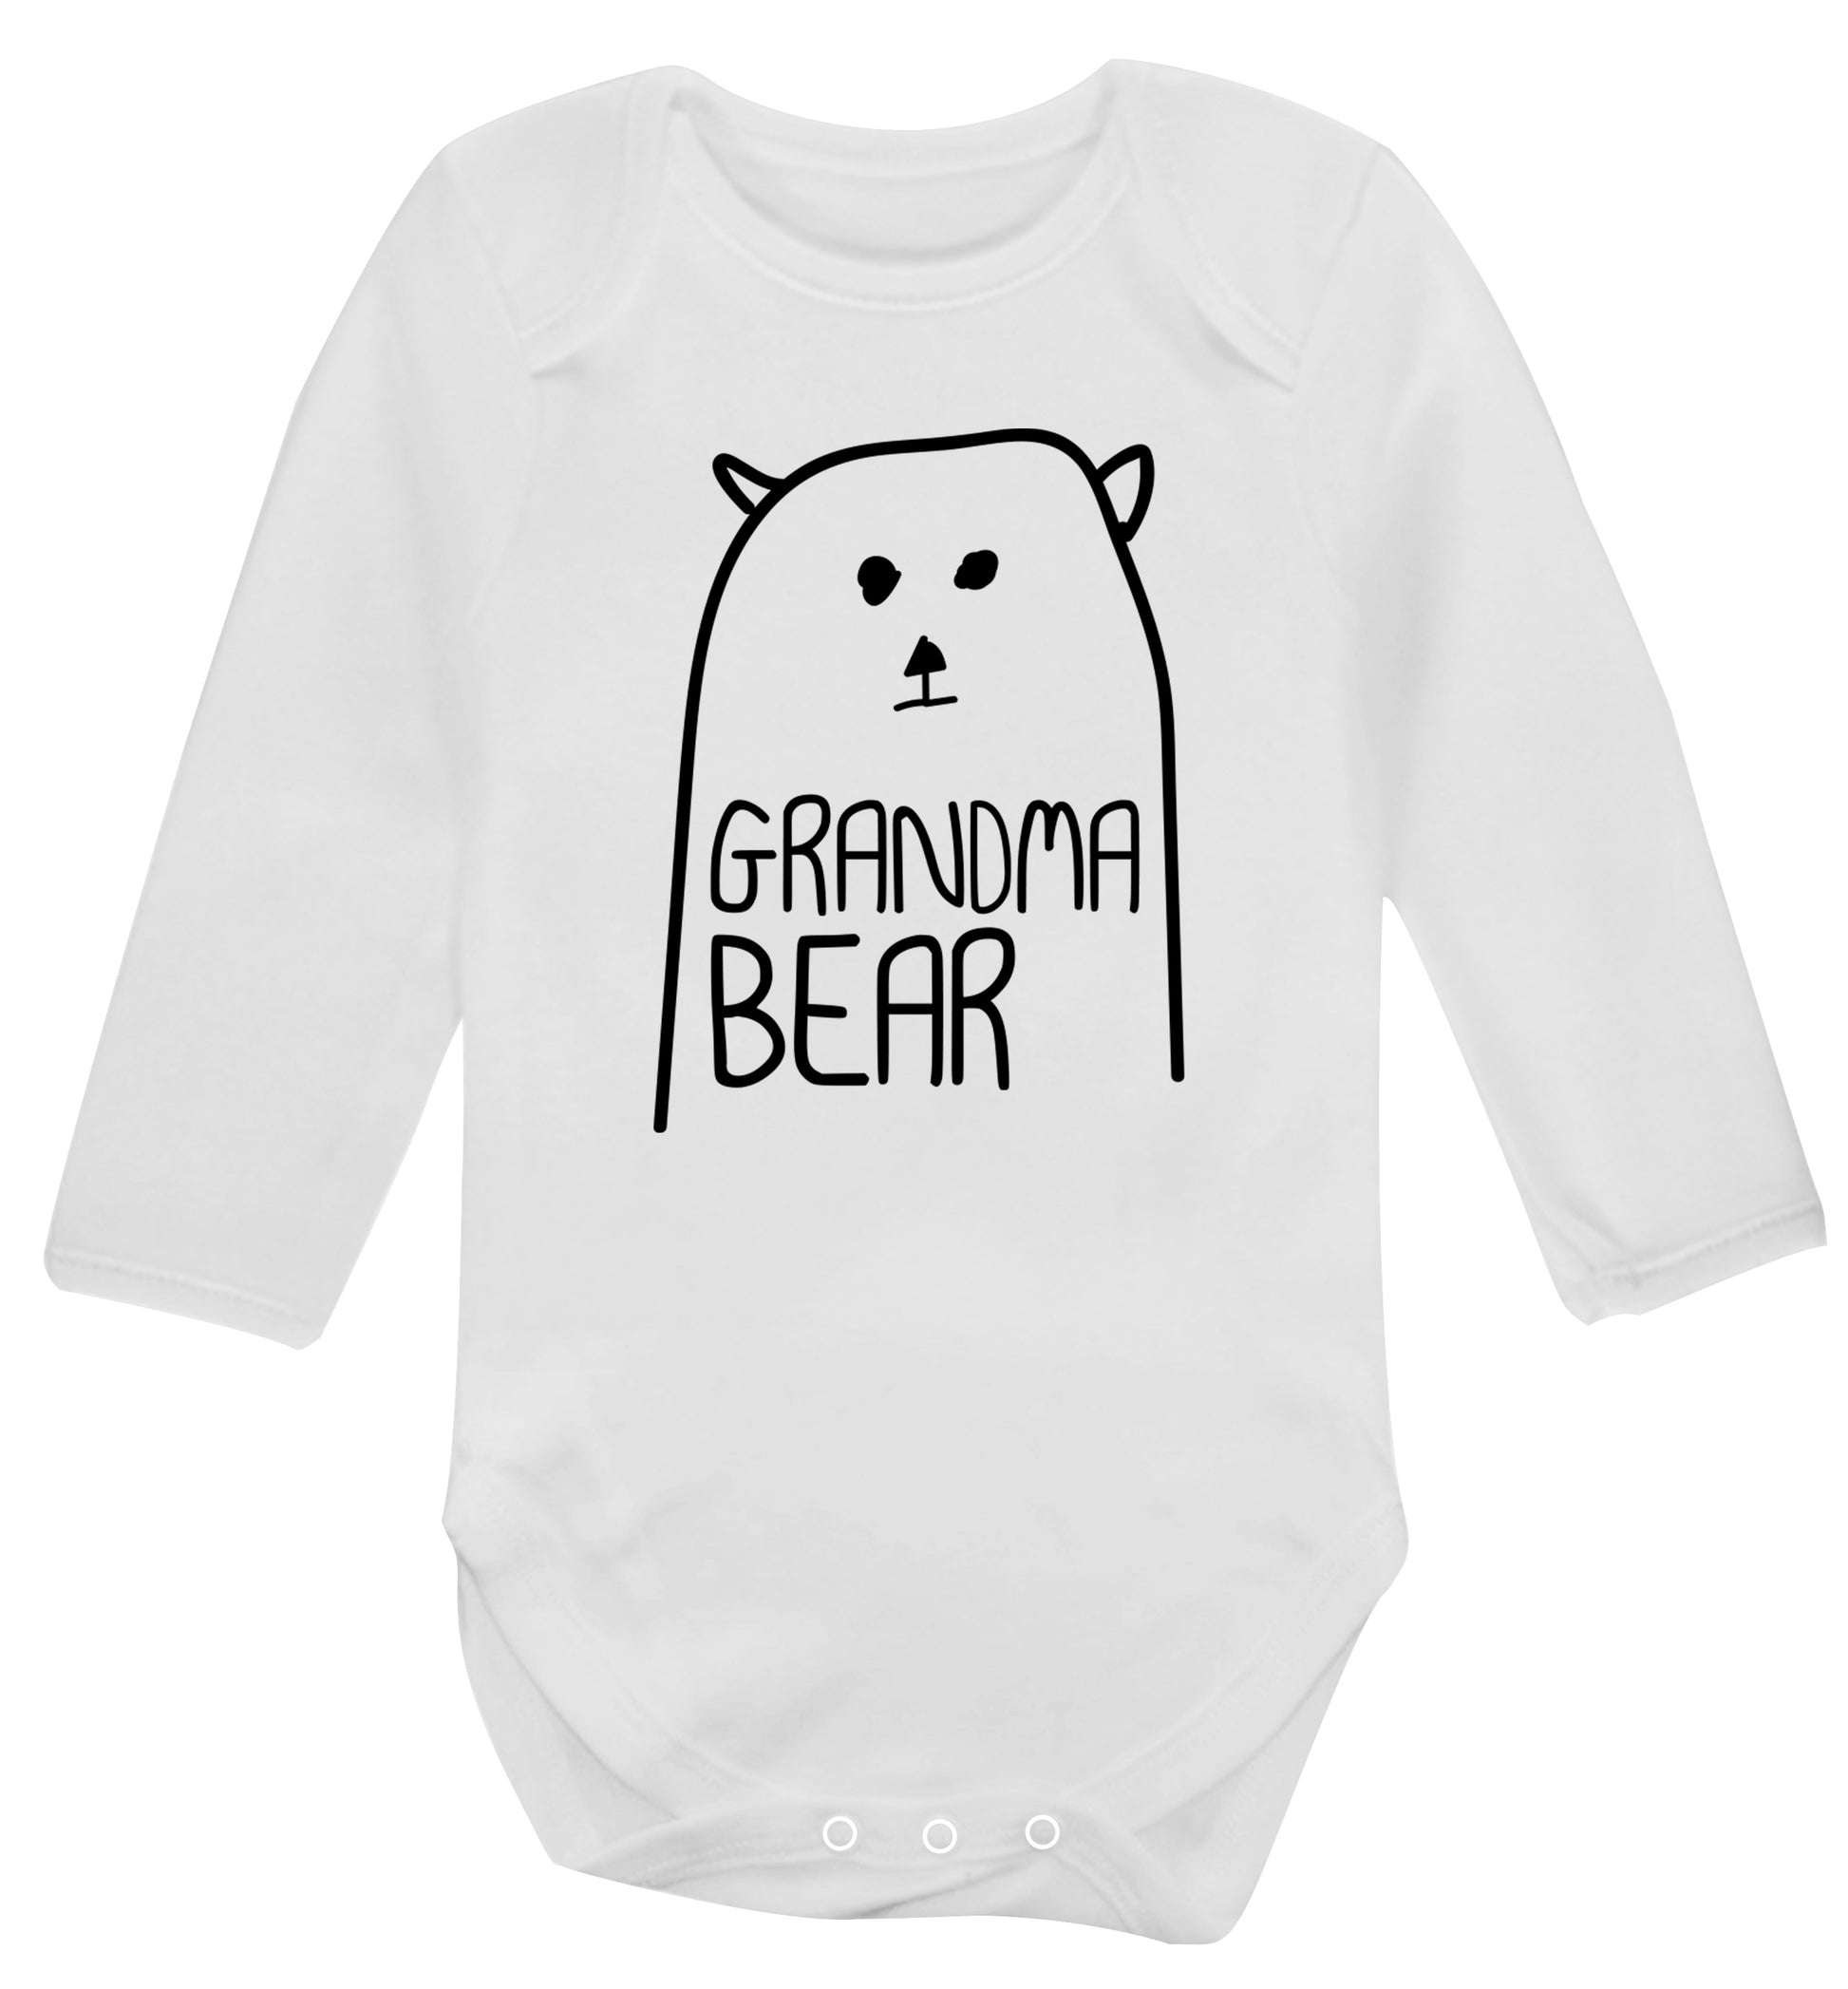 Grandma bear Baby Vest long sleeved white 6-12 months